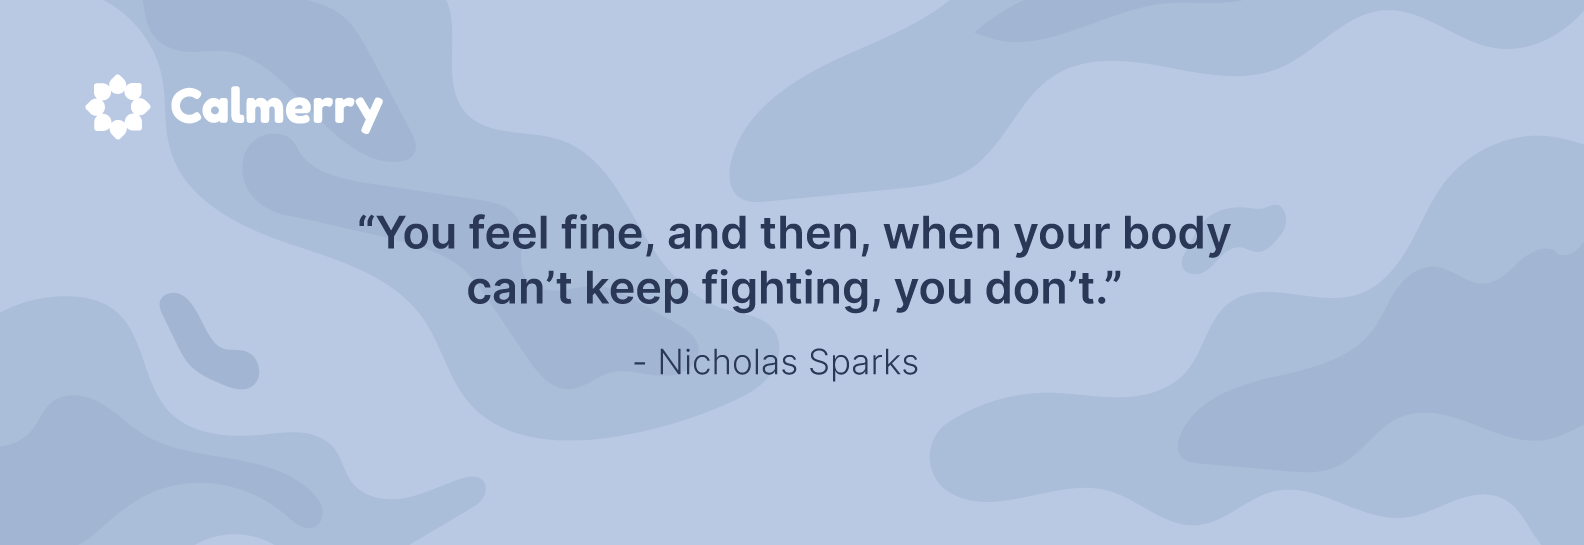 Nicholas Sparks quote